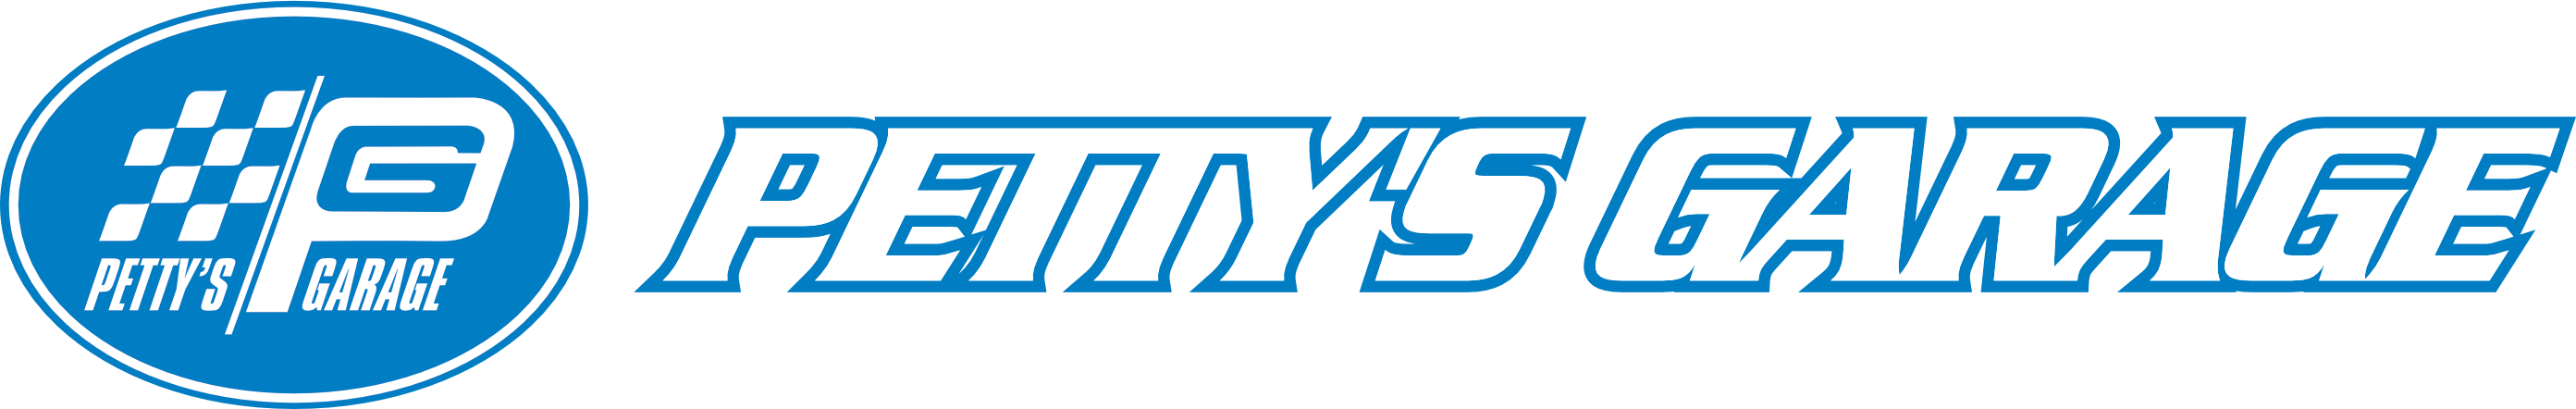 Petty's Garage Header Logo